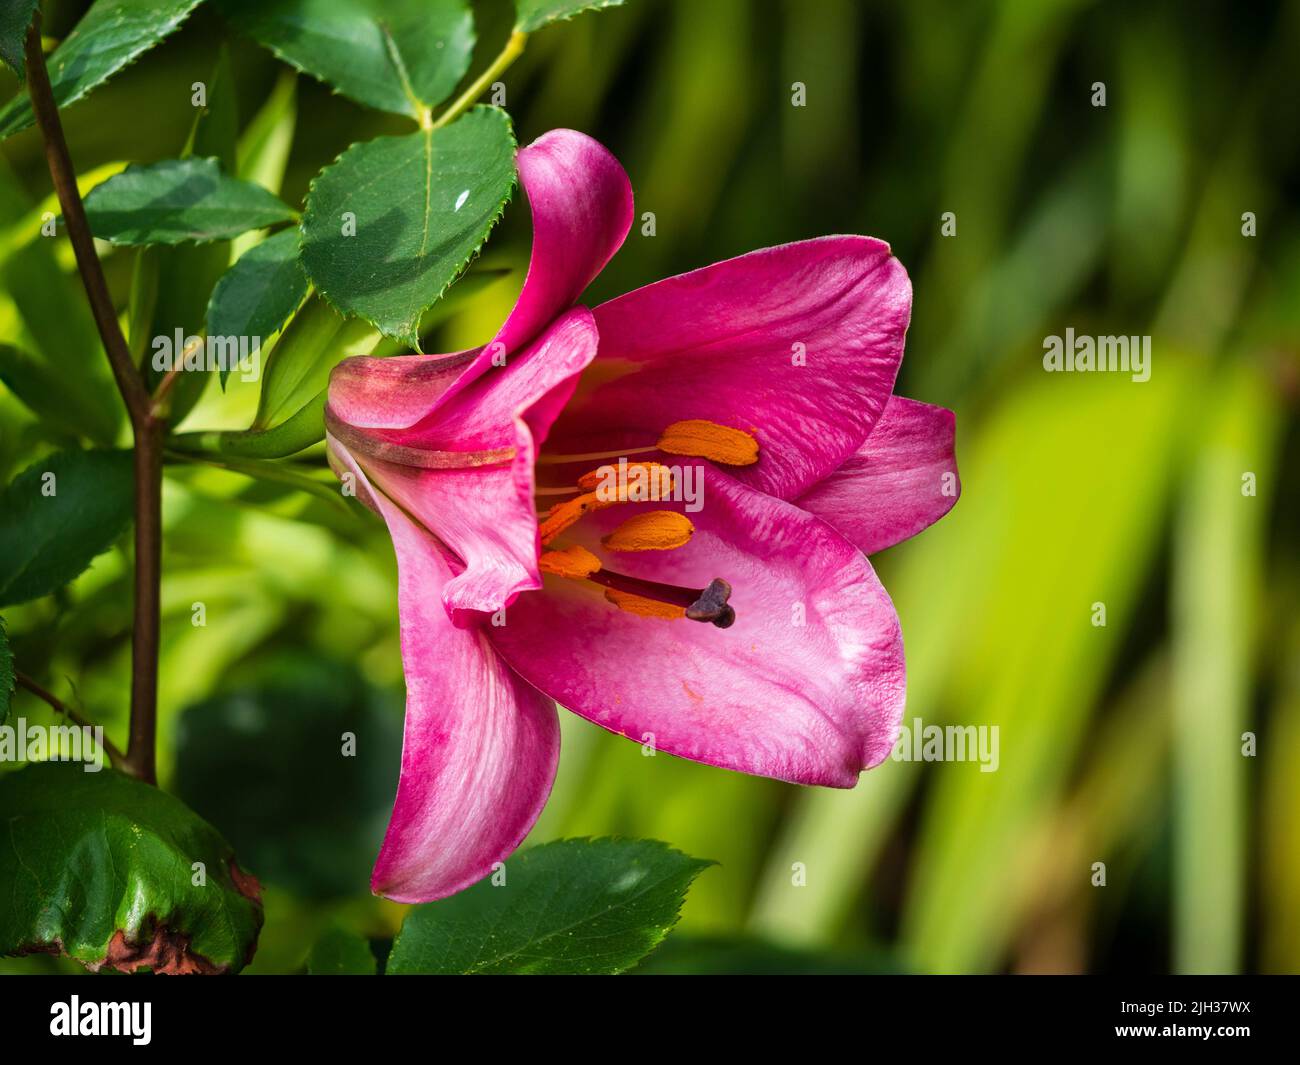 Gros plan de la fleur estivale de la nénuphar robuste de la trompette, Lilium 'Pink perfection' Banque D'Images